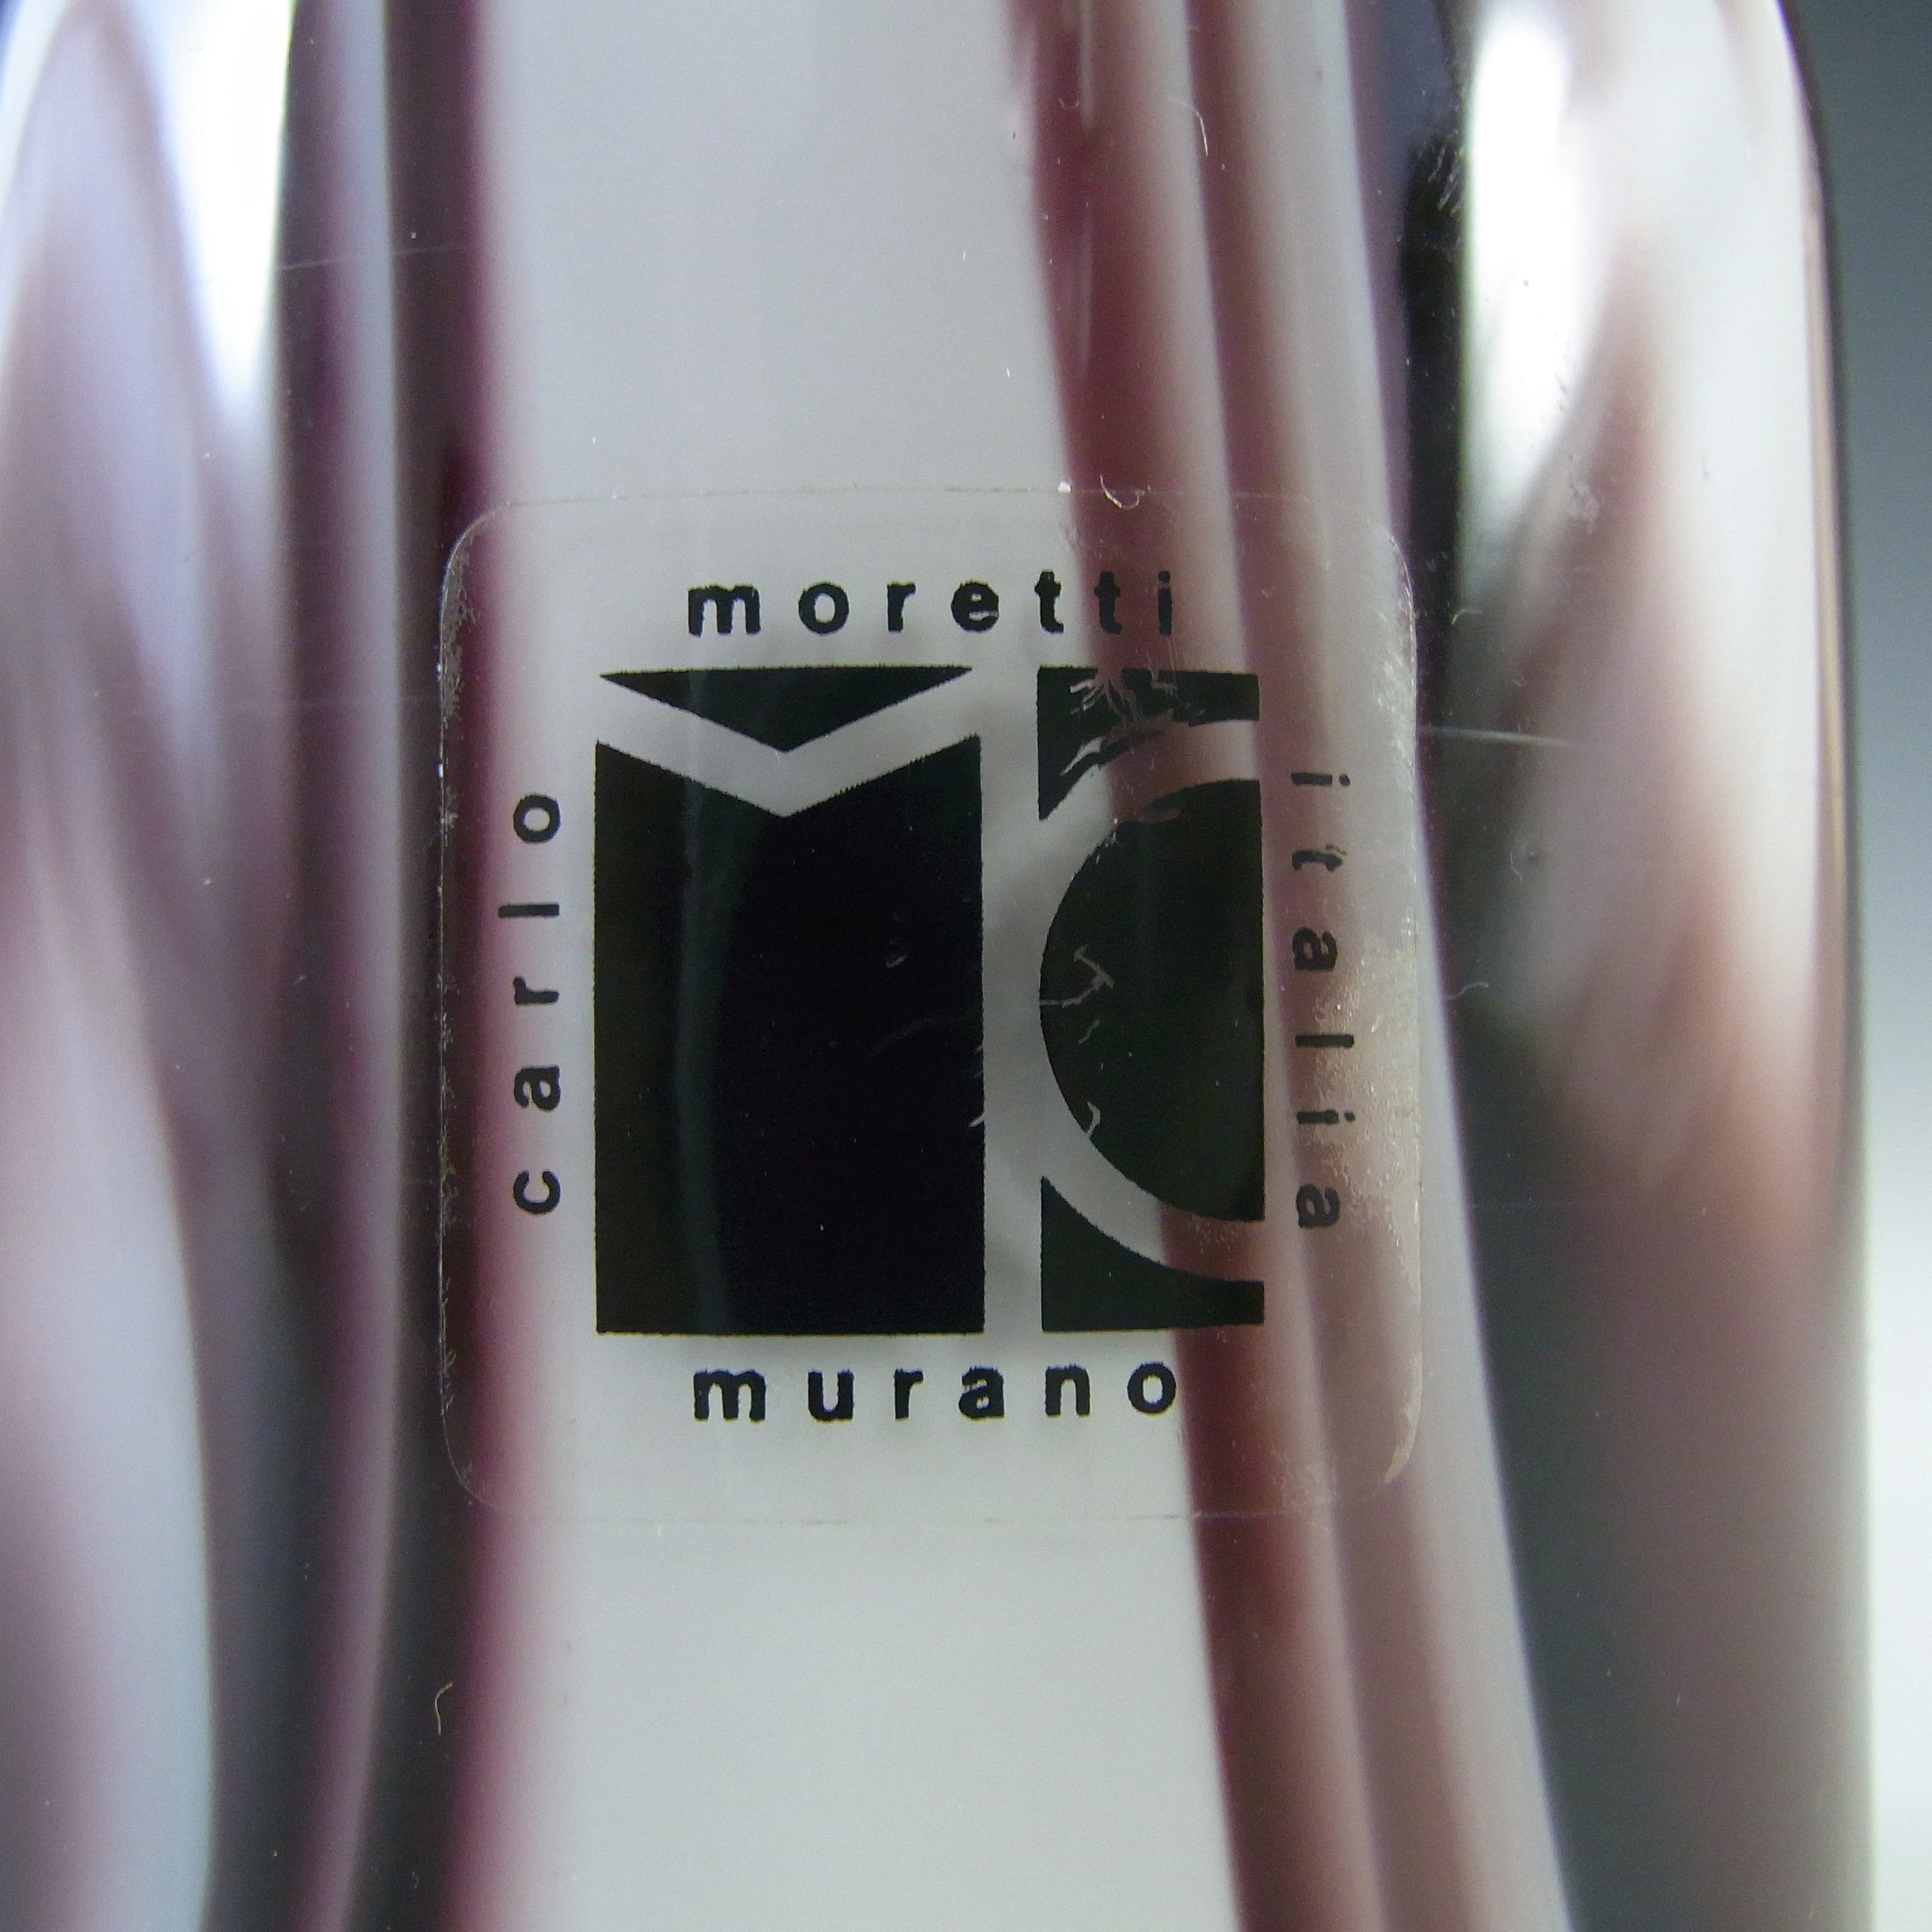 Carlo Moretti Marbled Purple & White Murano Glass Vase - Click Image to Close